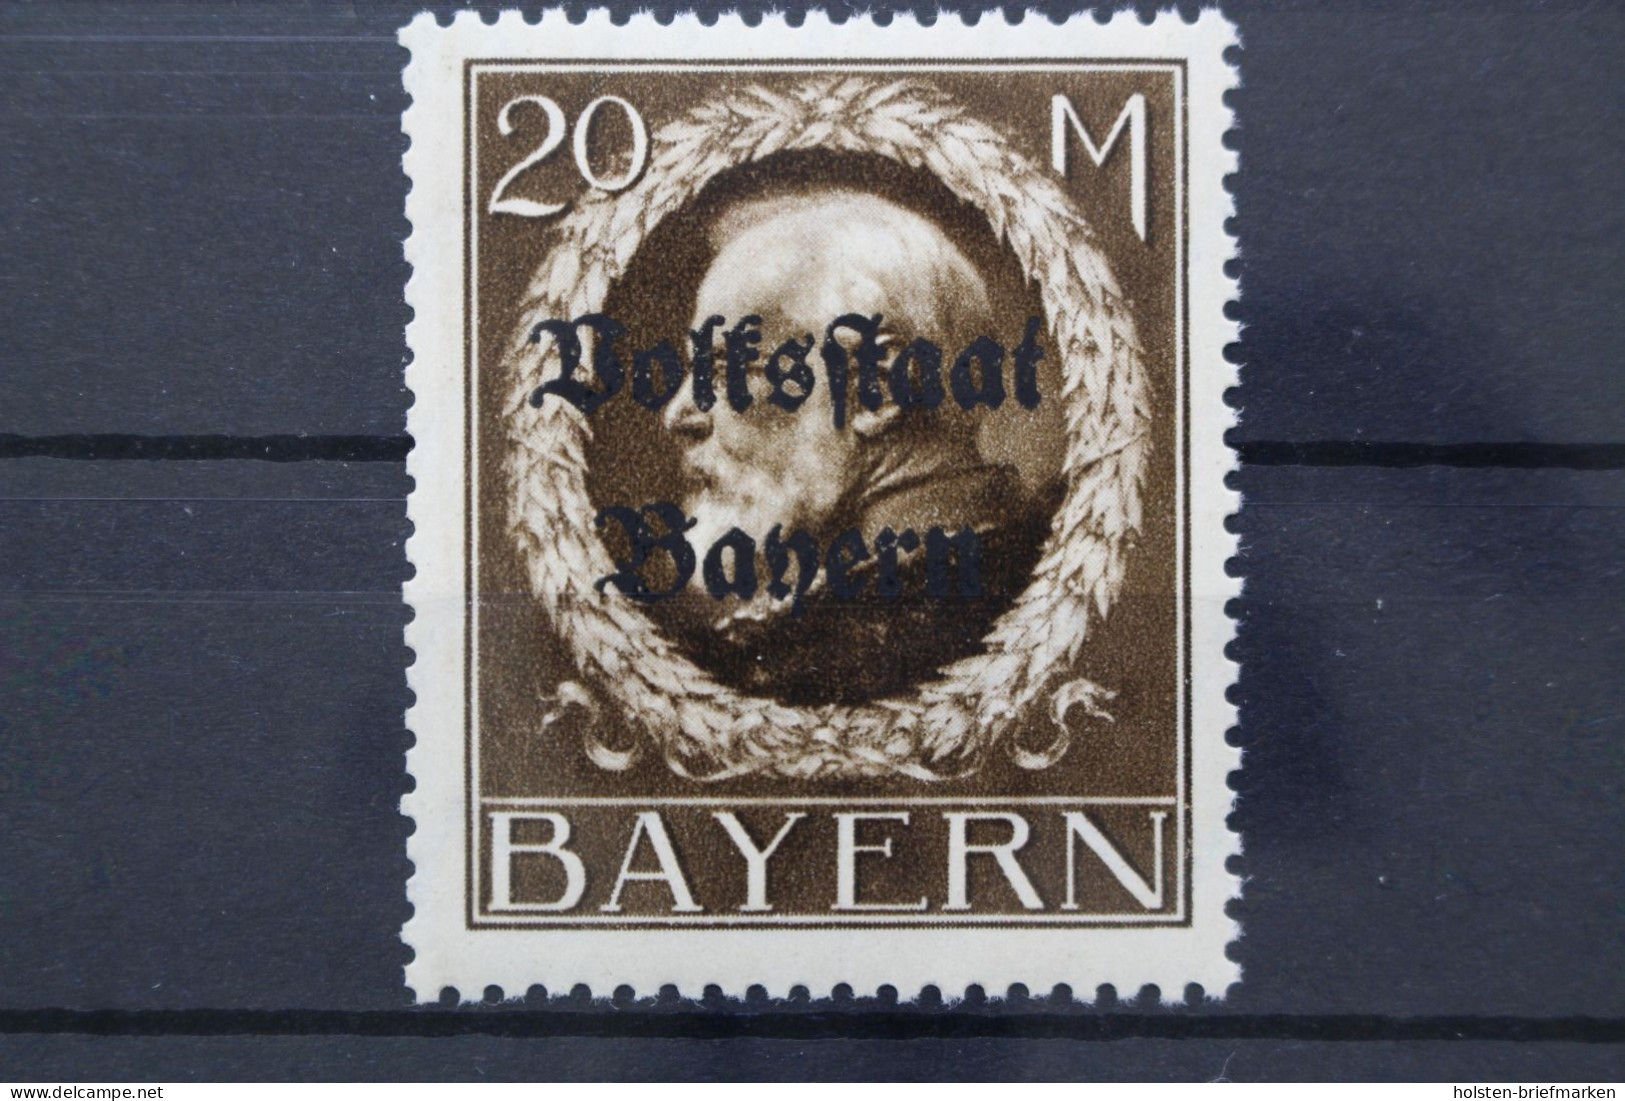 Bayern, MiNr. 133 II A, Postfrisch - Bremen